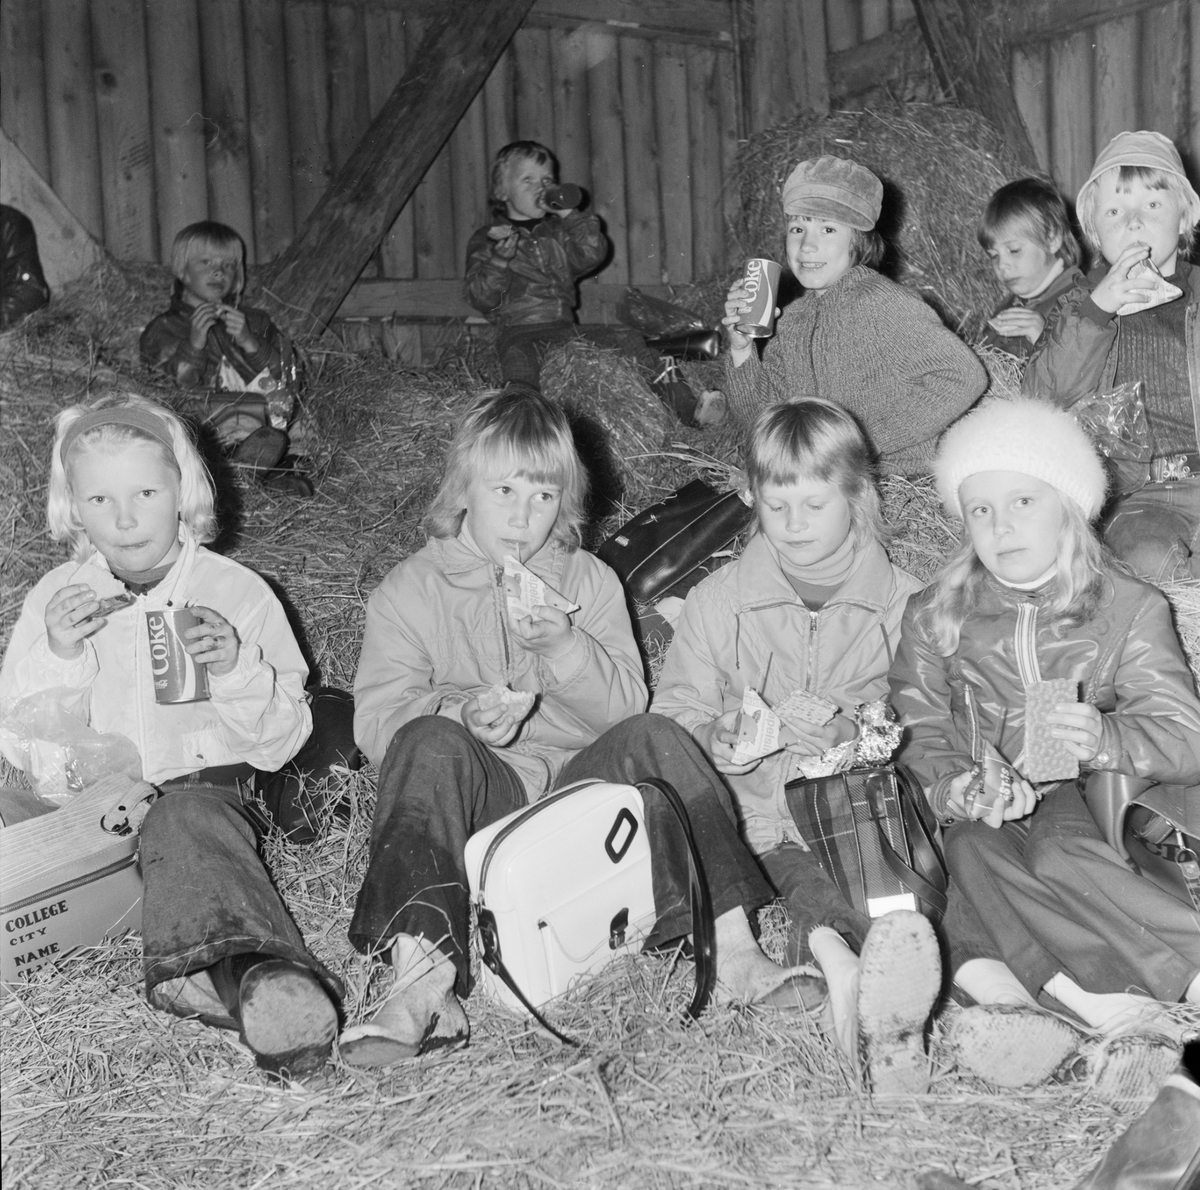 Elever på höskulle, Söderfors, Uppland, juni 1972